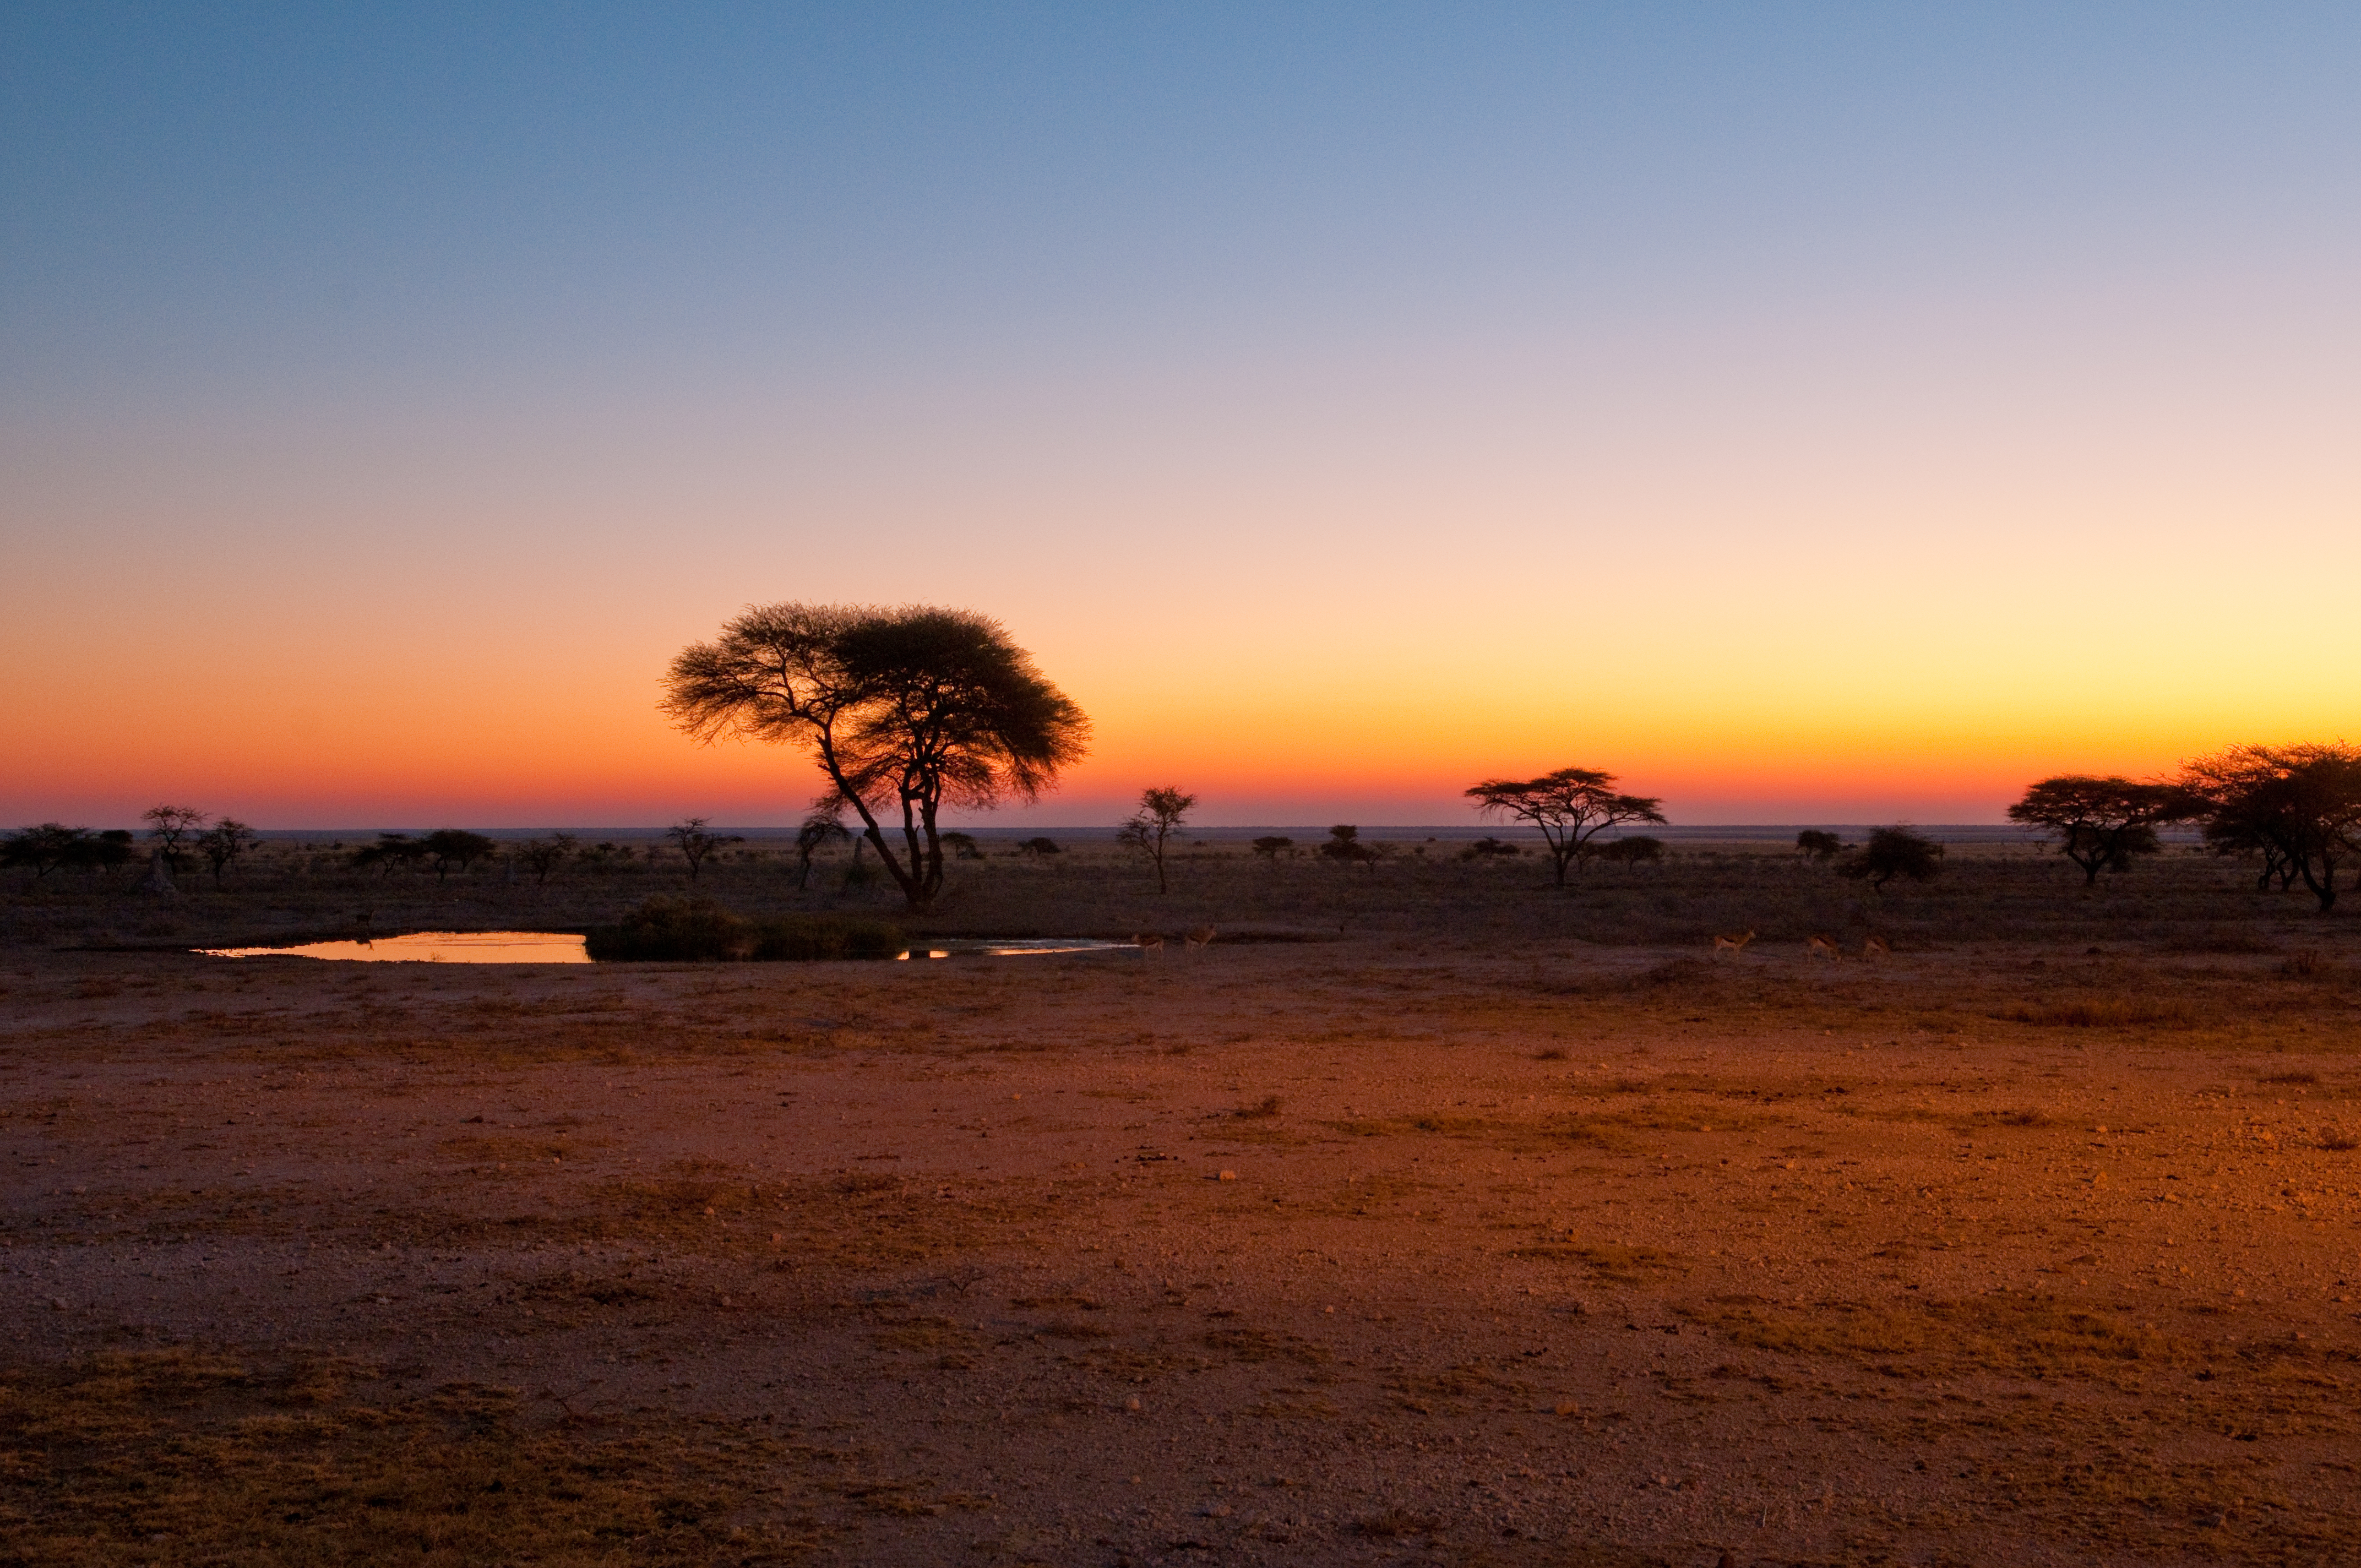 Саванной восточной африки. Нац парк Этоша Намибия. Парк Этоша в Намибии. Национальный парк Этоша в Африке.